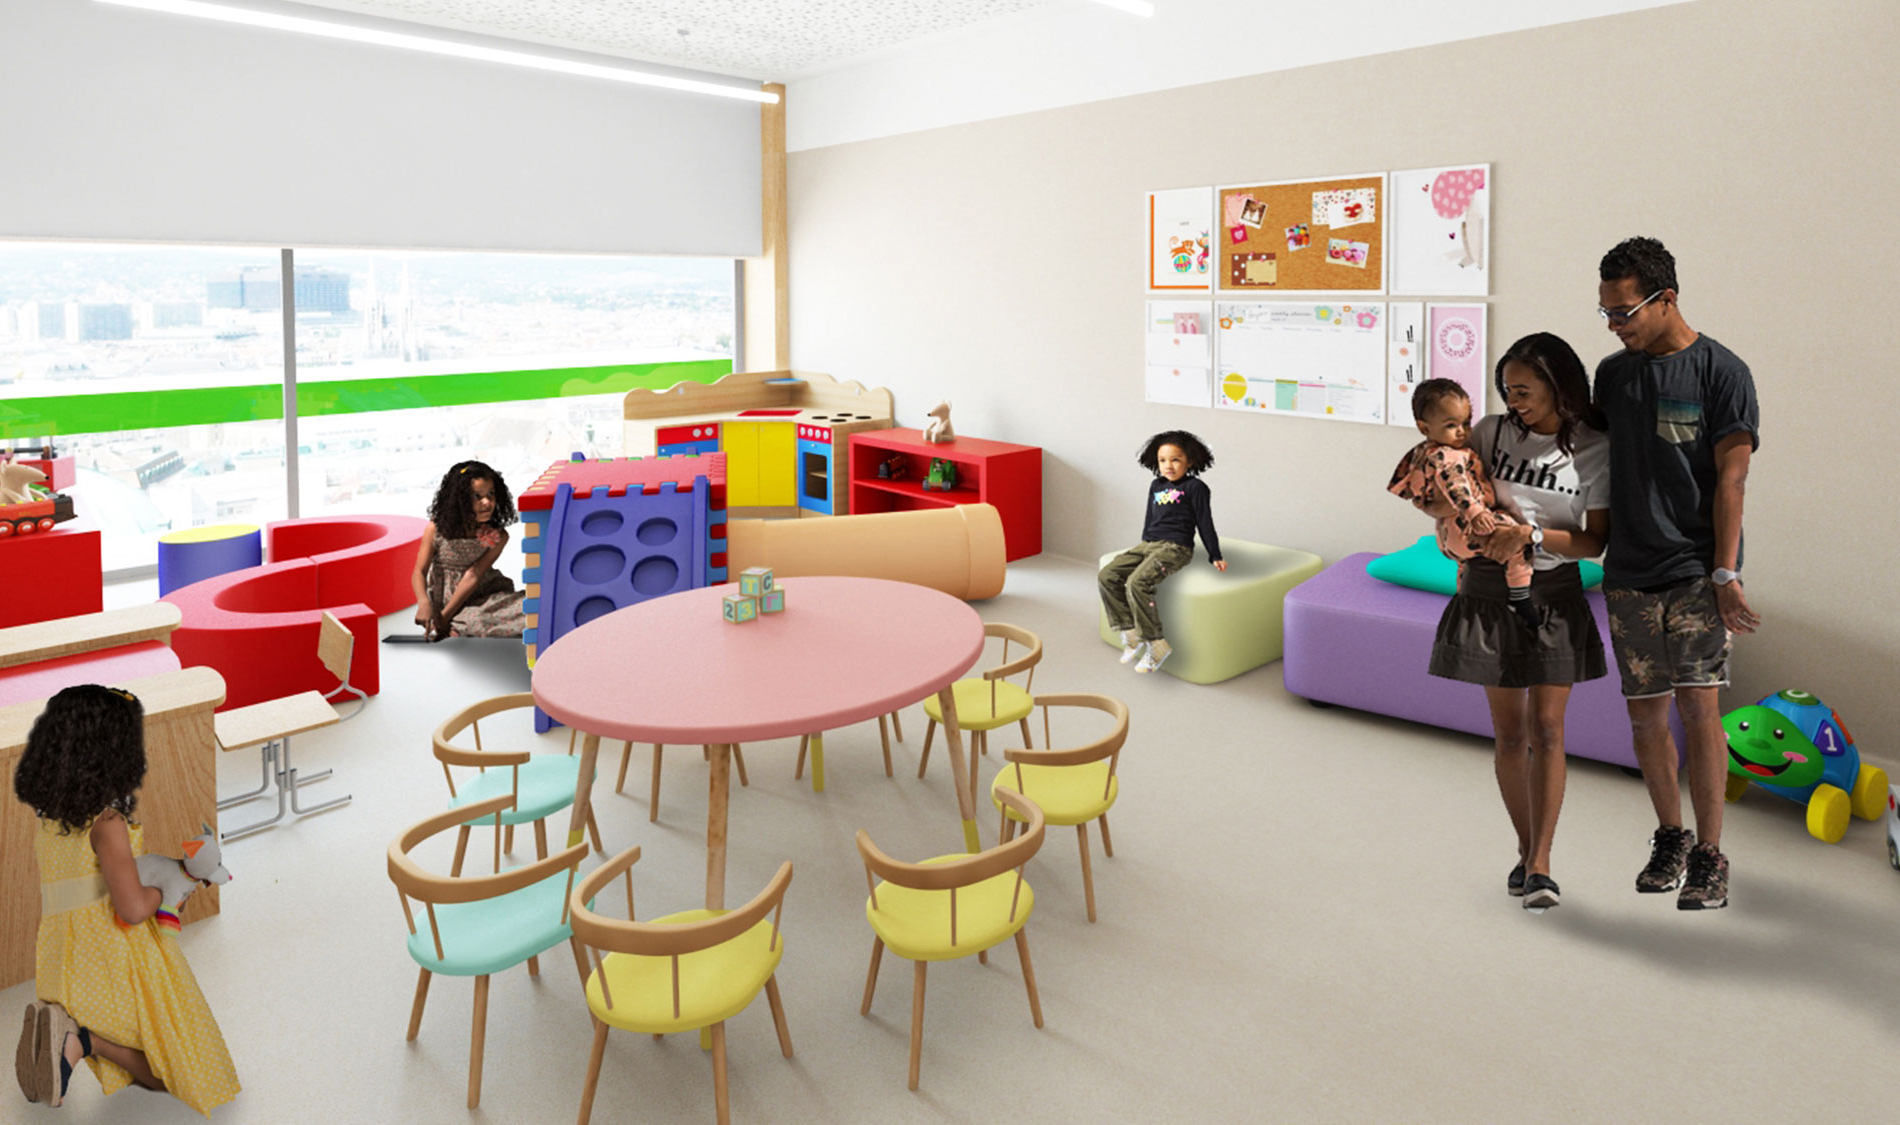 Aprender a brincar através da arquitetura da escola. Sala creche com mobiliário e iluminação colorido. Colégio Aldancas projeto Obra Atelier